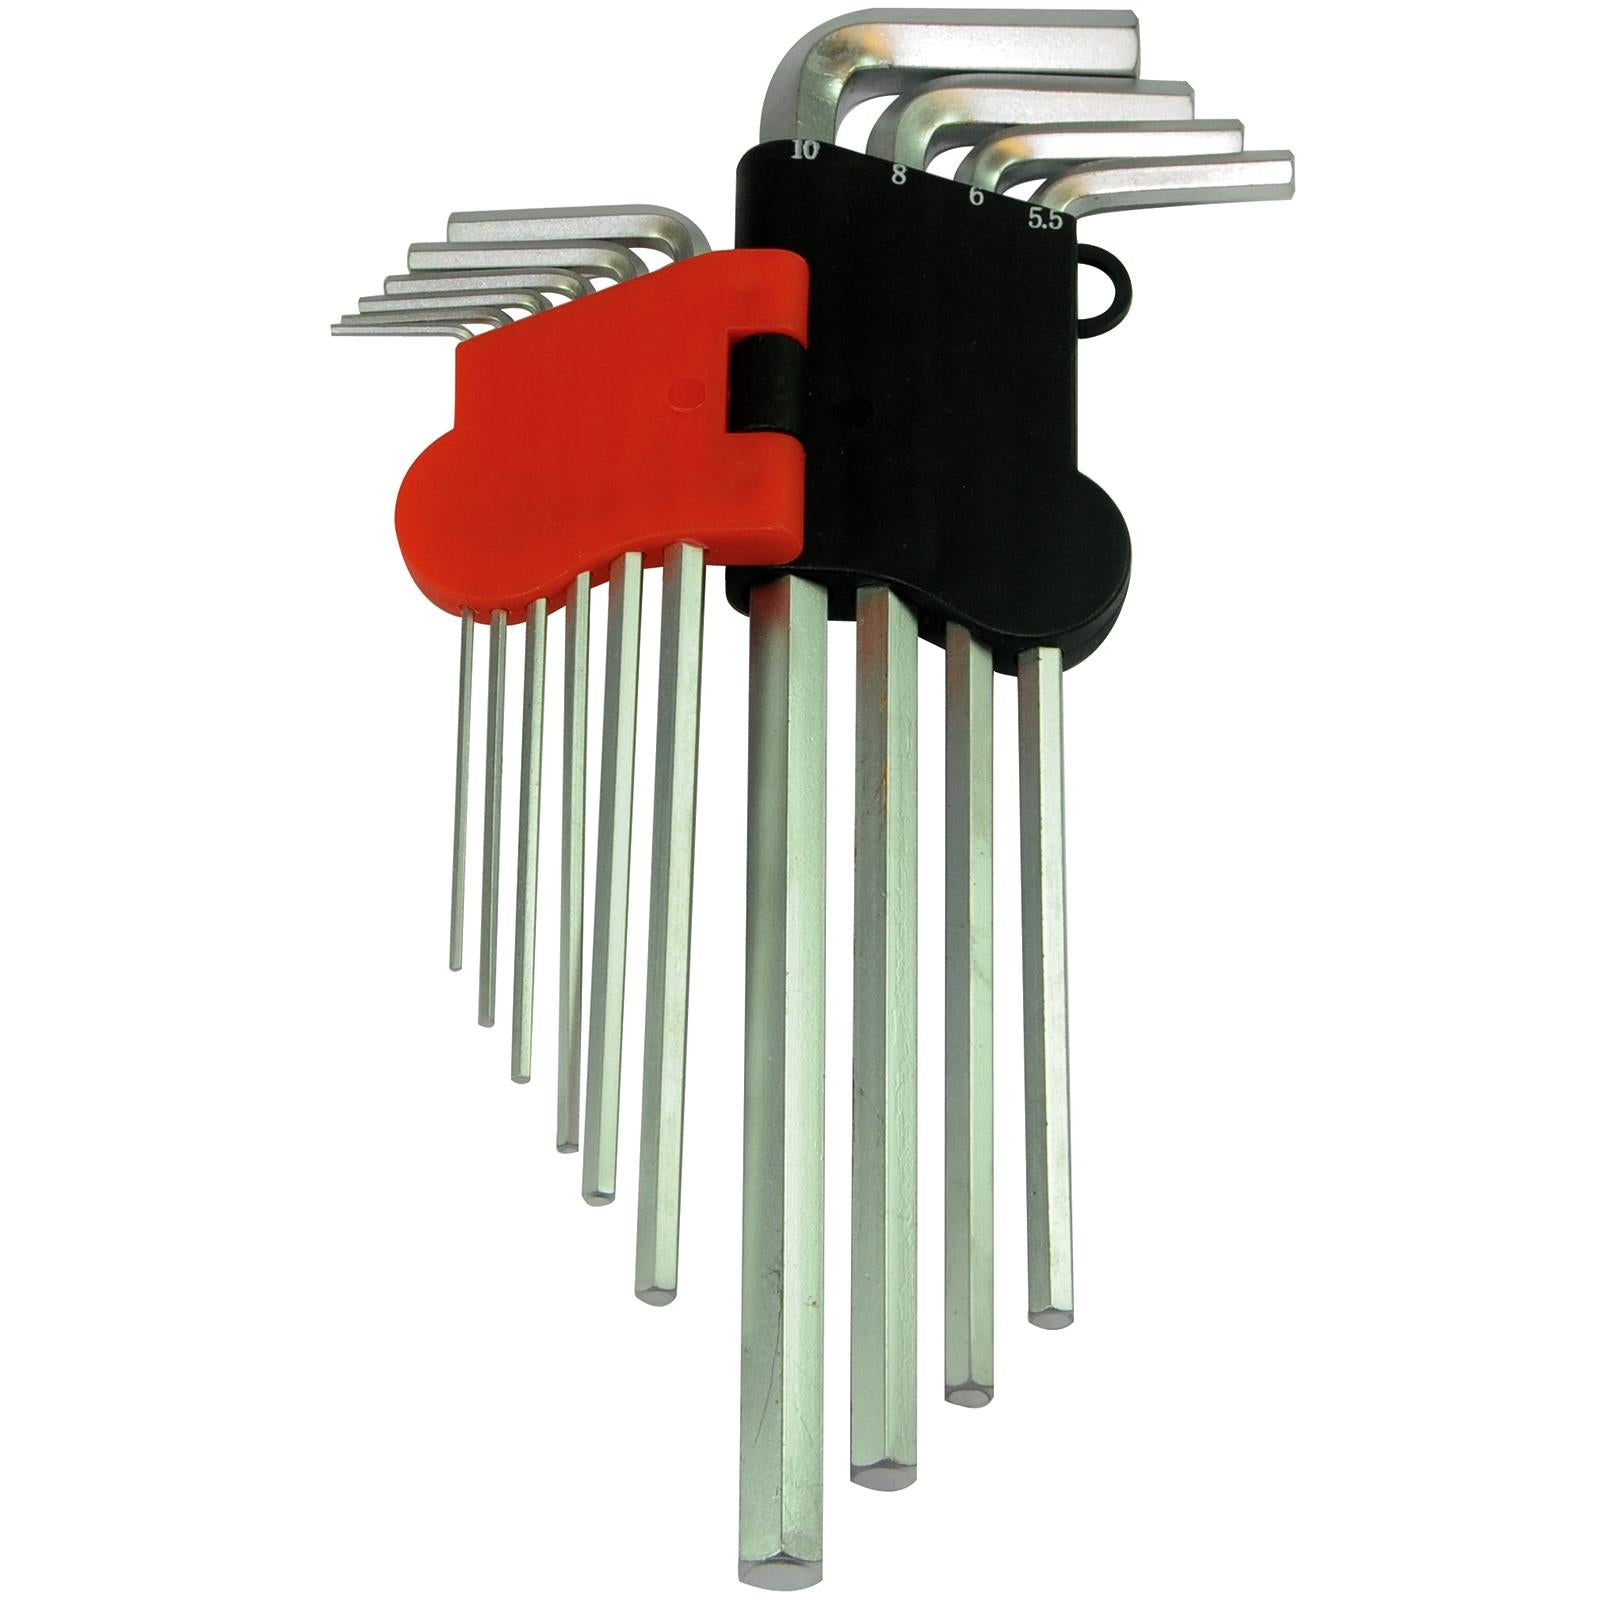 Silverline 10 Piece Hex Key Set Metric 1.5mm - 10mm Expert Steel Socket Wrench